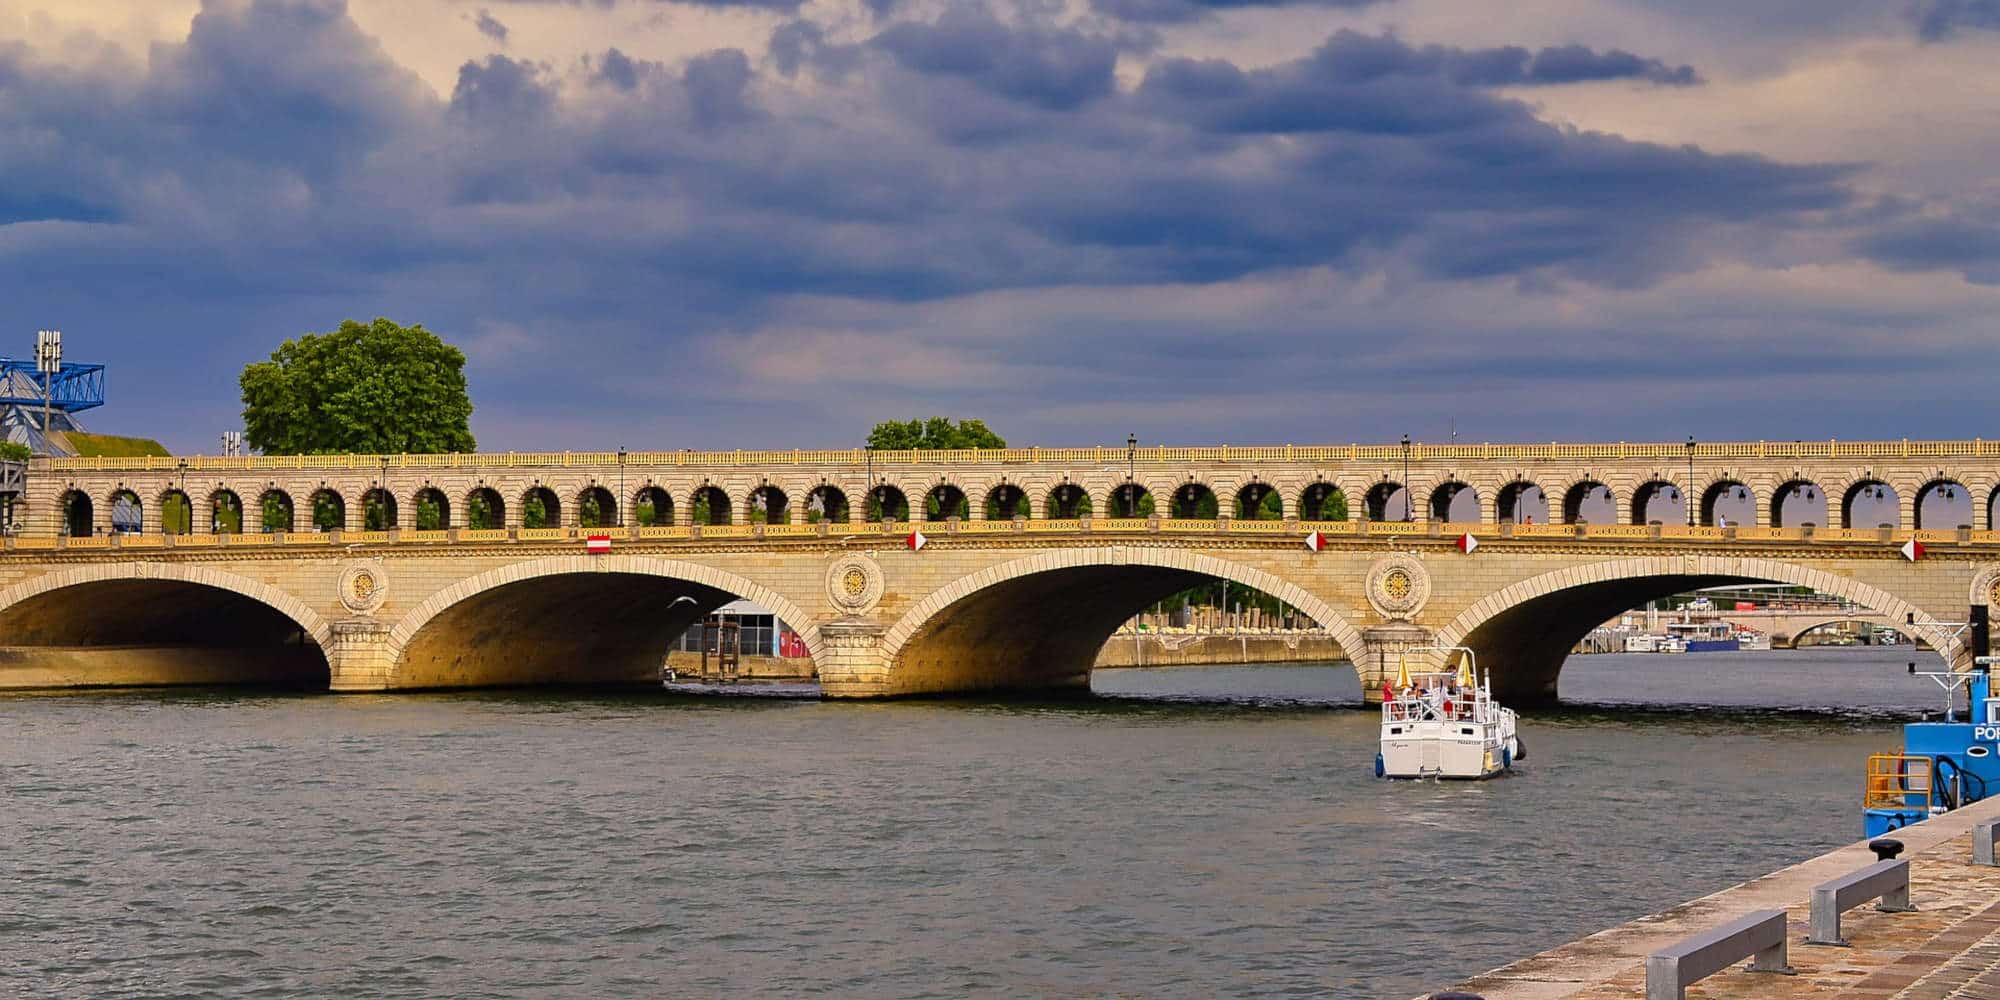 Γέφυρα στο Παρίσι, στη συνοικία Μπερσί όπου βρίσκεται το υπουργείο Οικονομικών